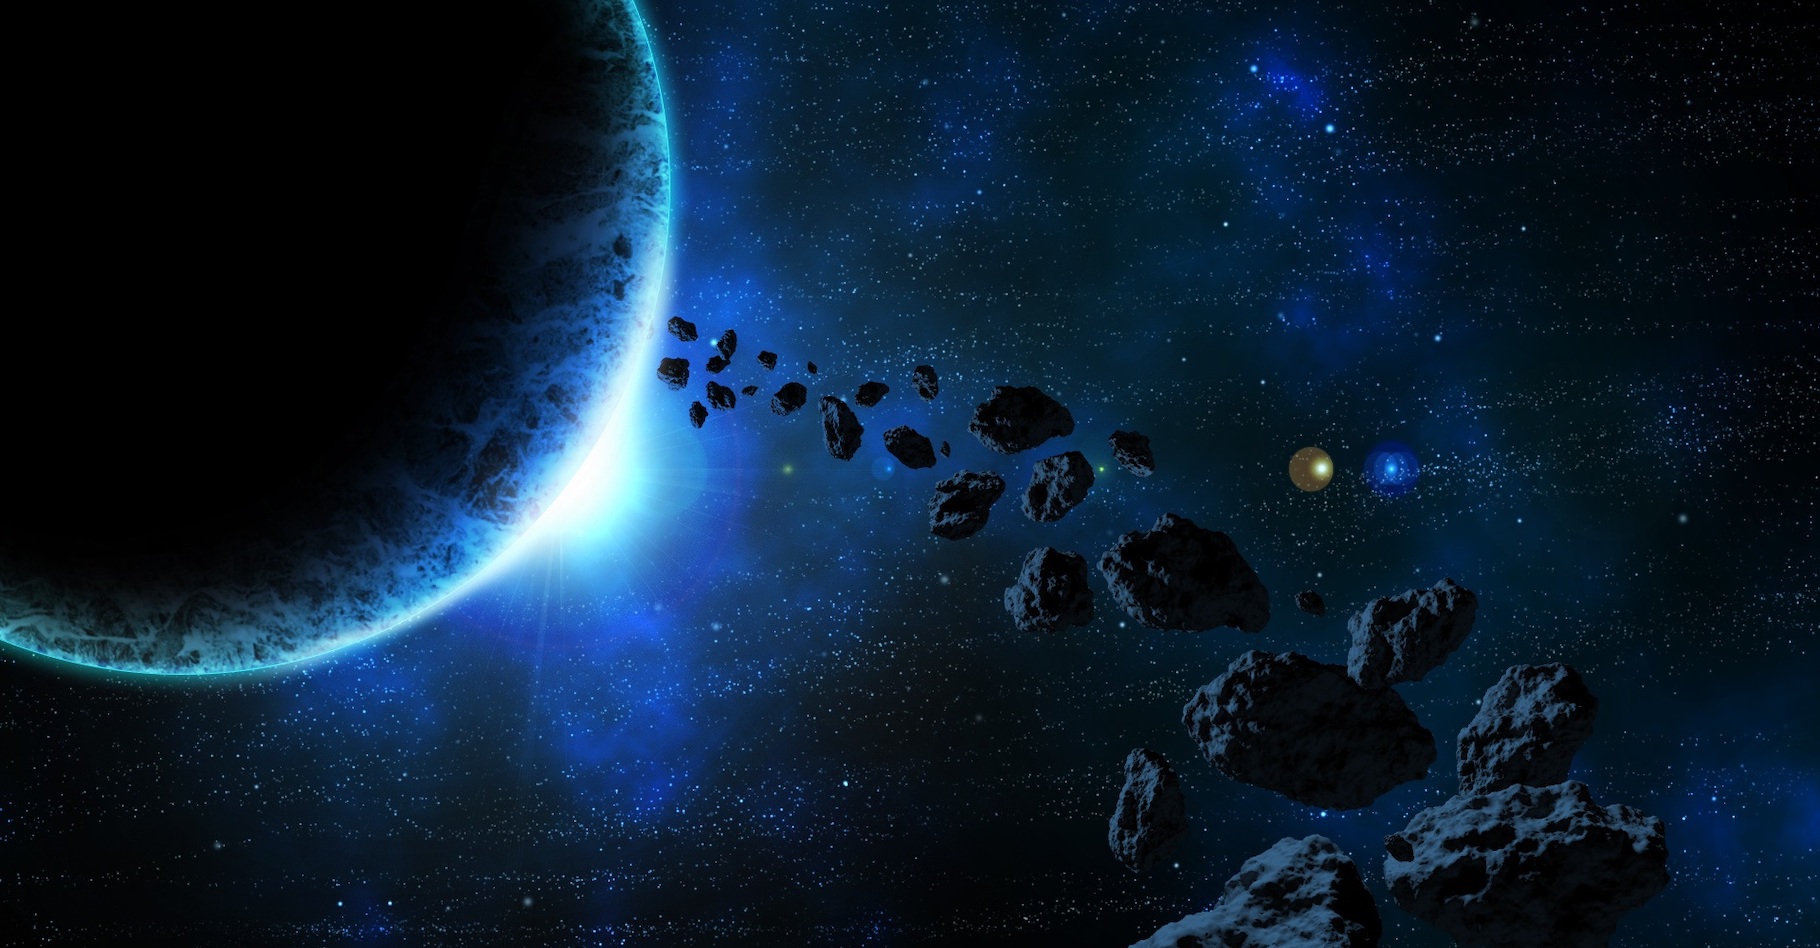 Des poussières issues de l’explosion d’un astéroïde ont modifié le climat sur Terre il y a 466 millions d’années. Le climat et la vie ! © UKT2, Pixabay License